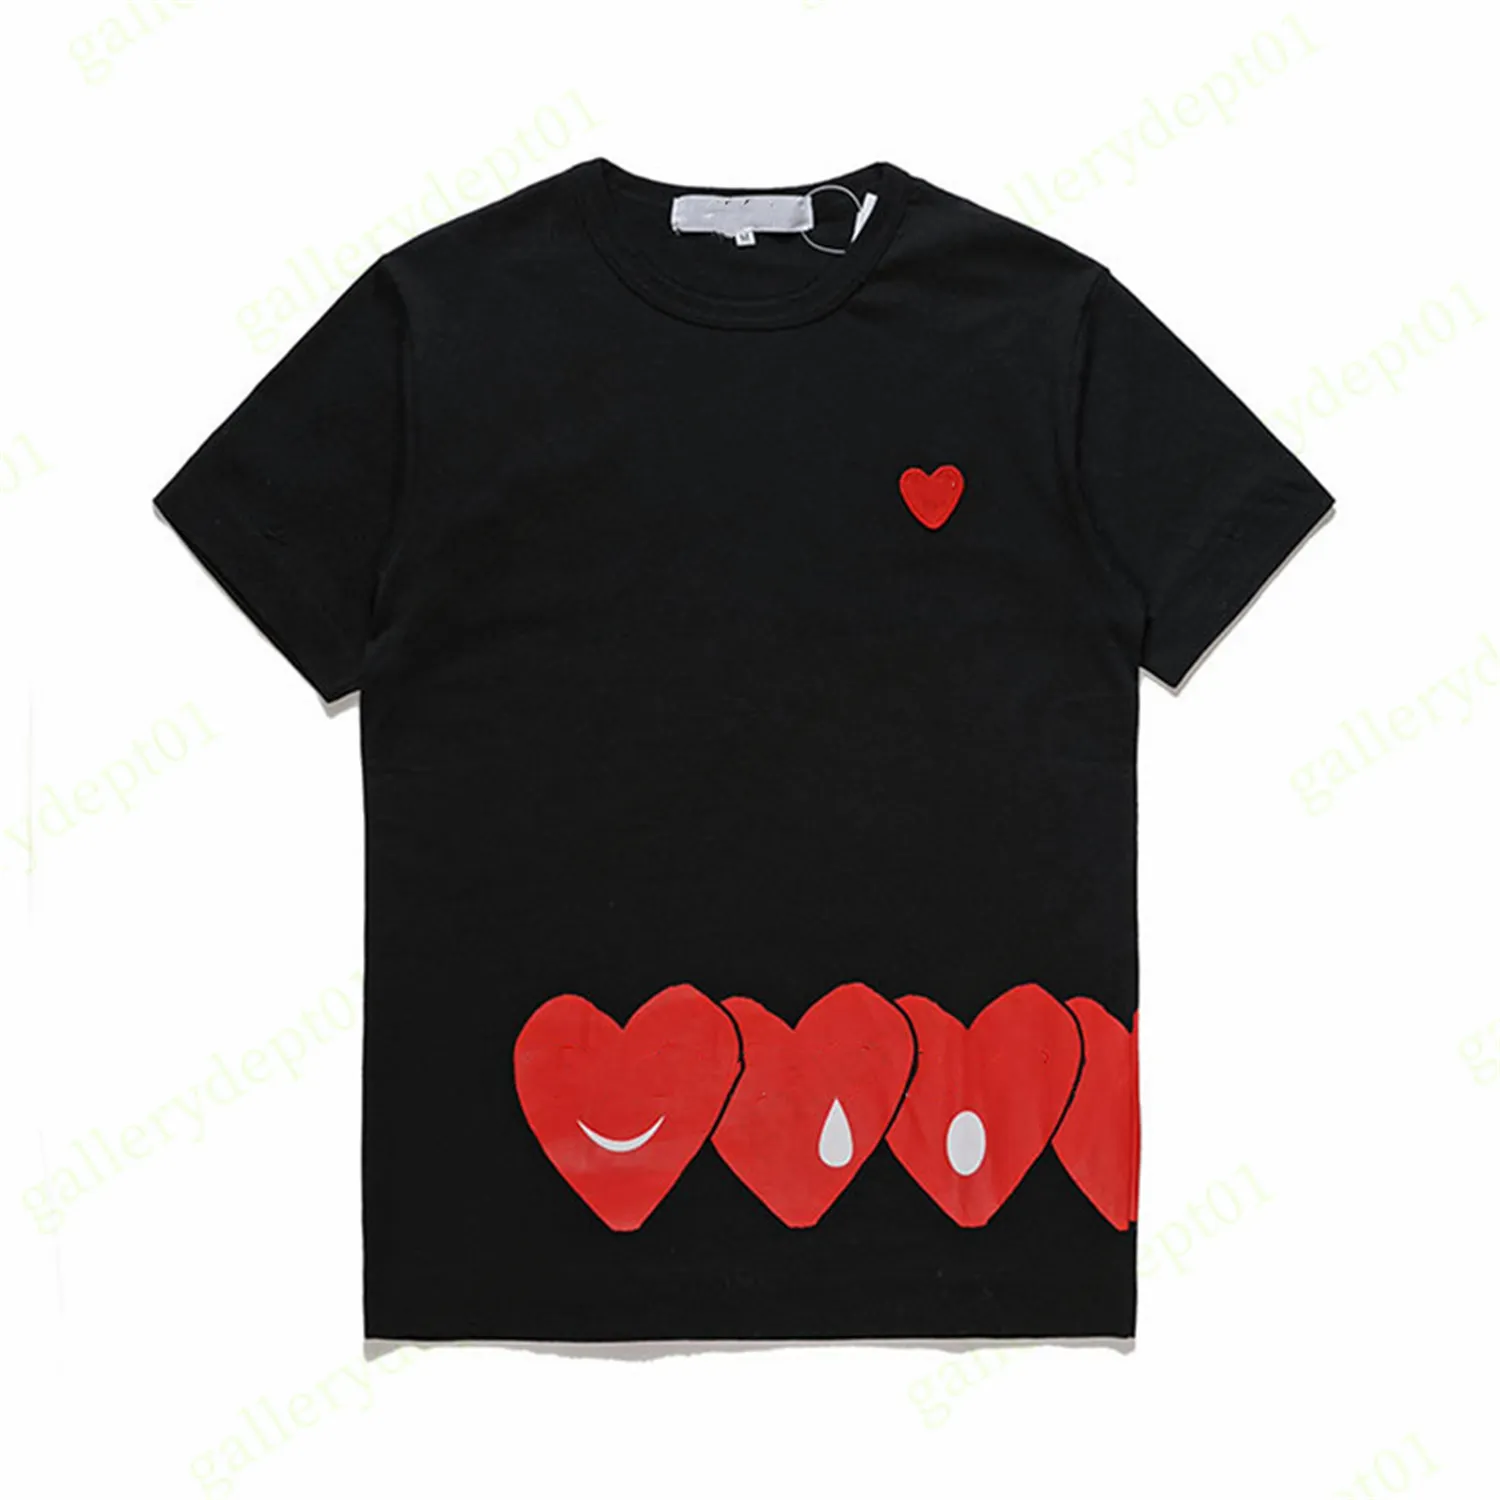 Mens T قمصان مصمم T Shirt Red Heart على الجانب الأبيض Tshirts زوجين نماذج أحب الملابس الرسومية الجولة القطن القطن قصير الأكمام 20 تي شيرت التمويه A1